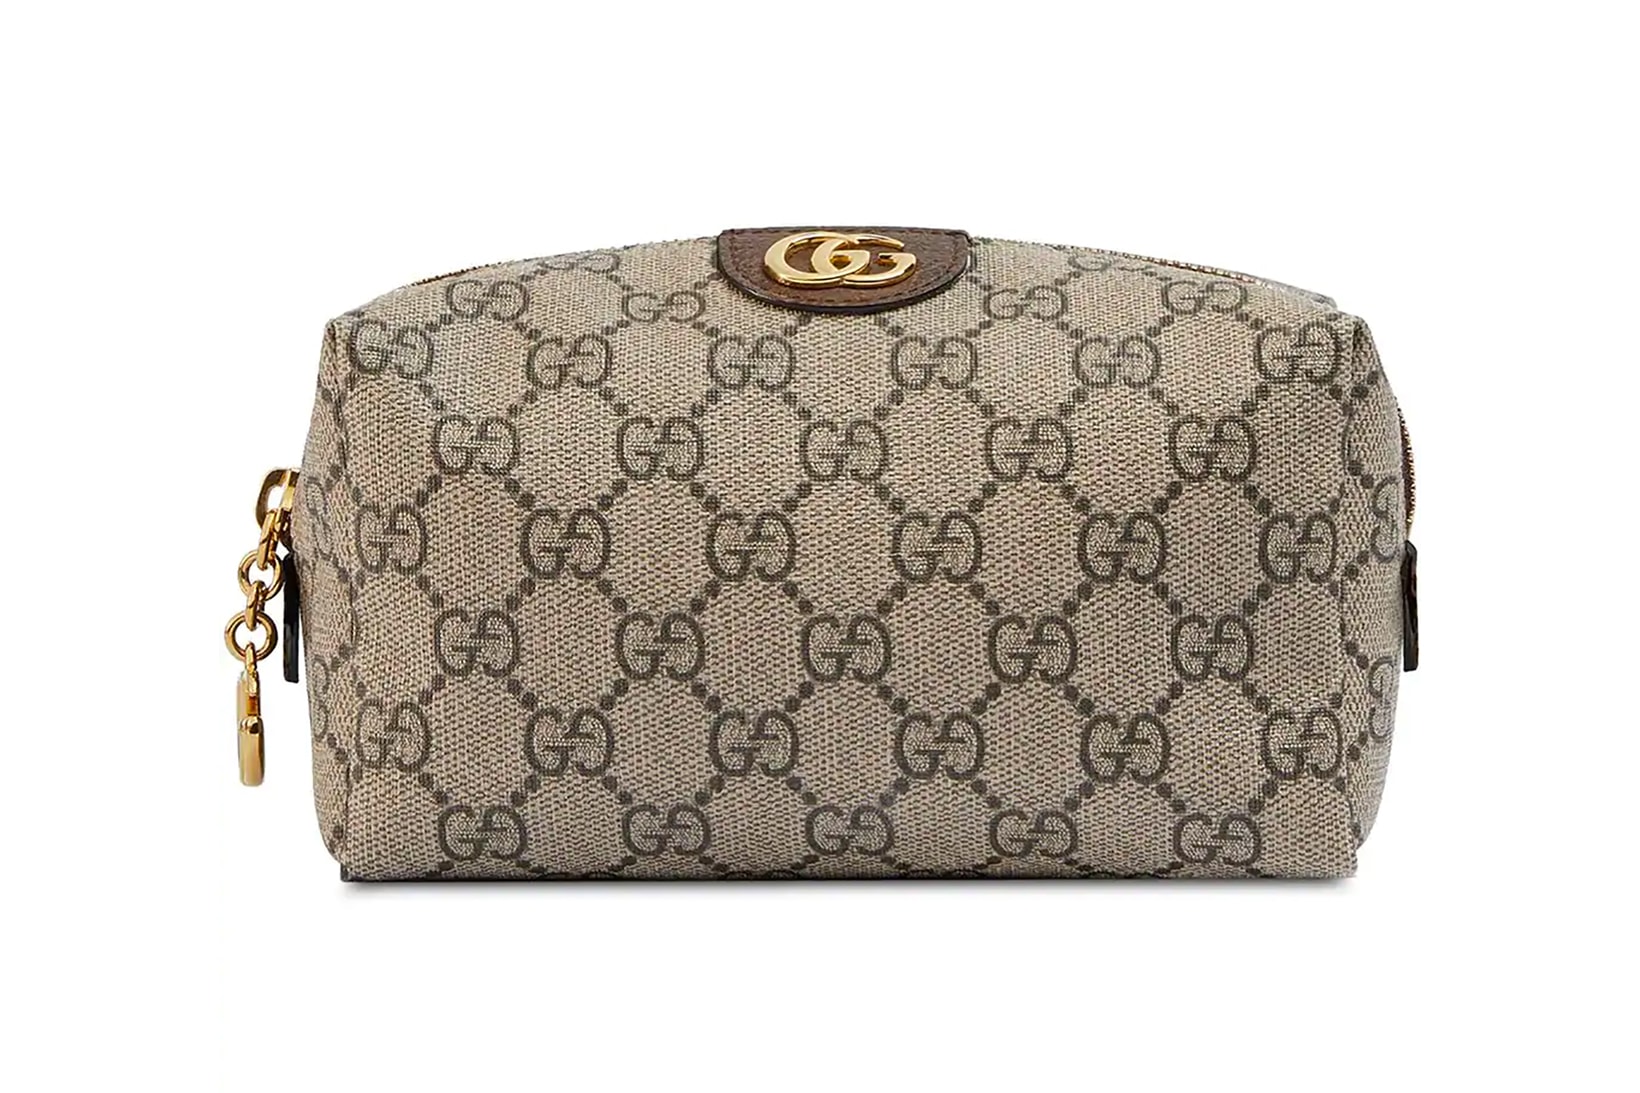 Gucci Top Zip Backpack Monogram GG Beige/Brown